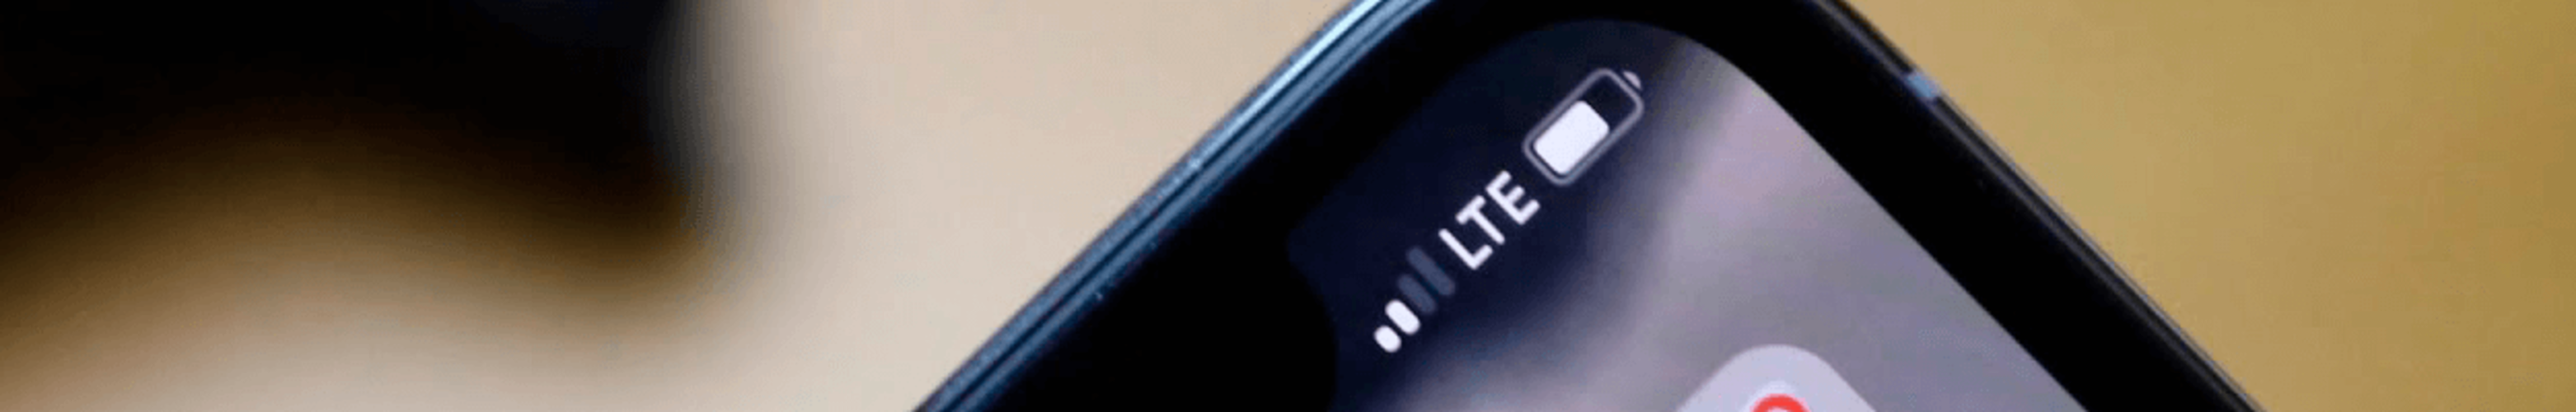 Как отключить LTE на iPhone различных модификаций?